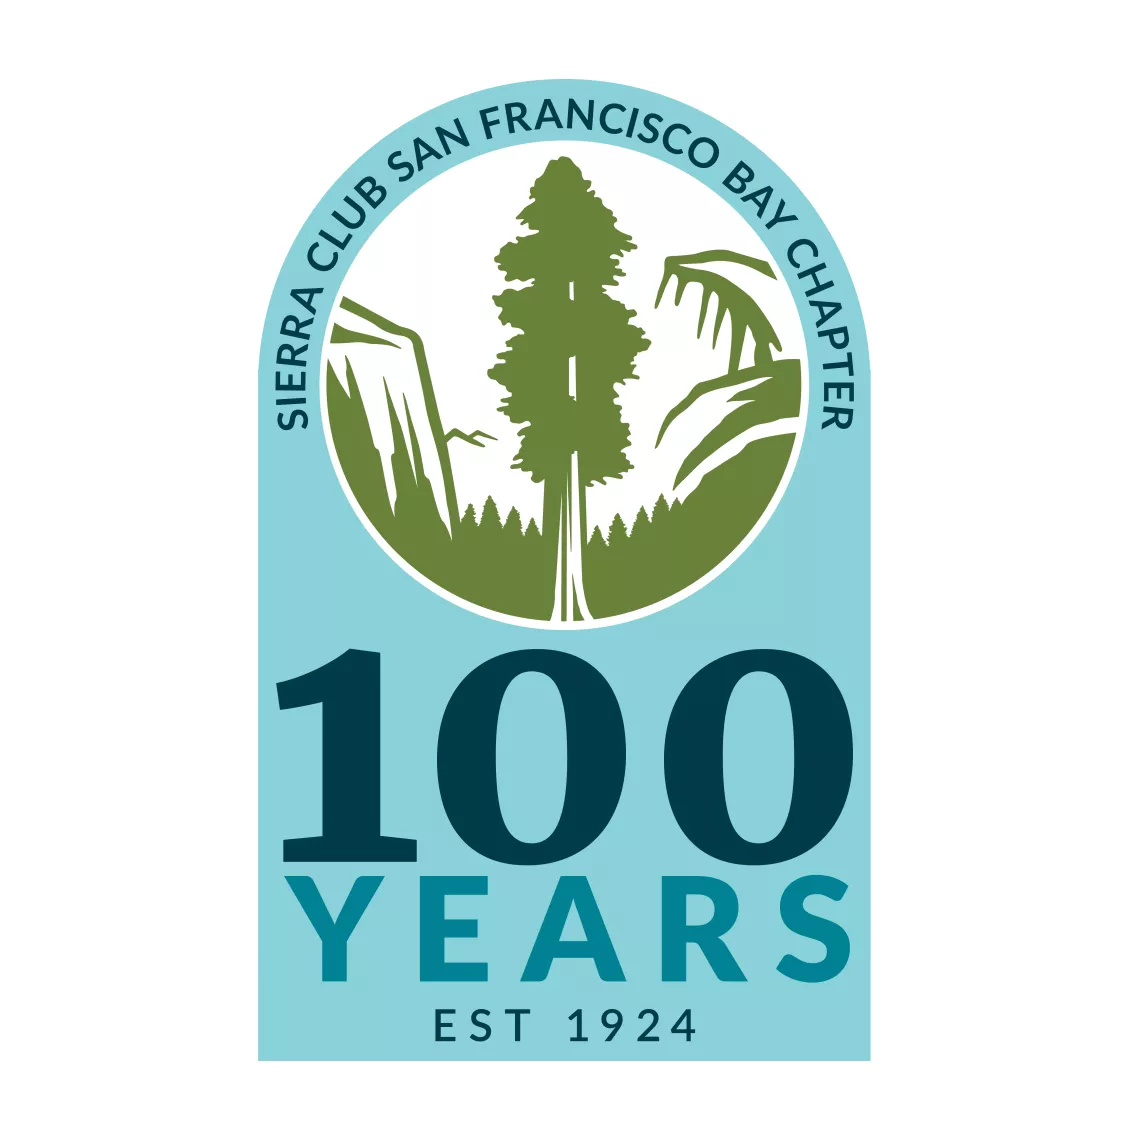 Sierra Club San Francisco Bay Chapter 100 Years EST 1924 logo